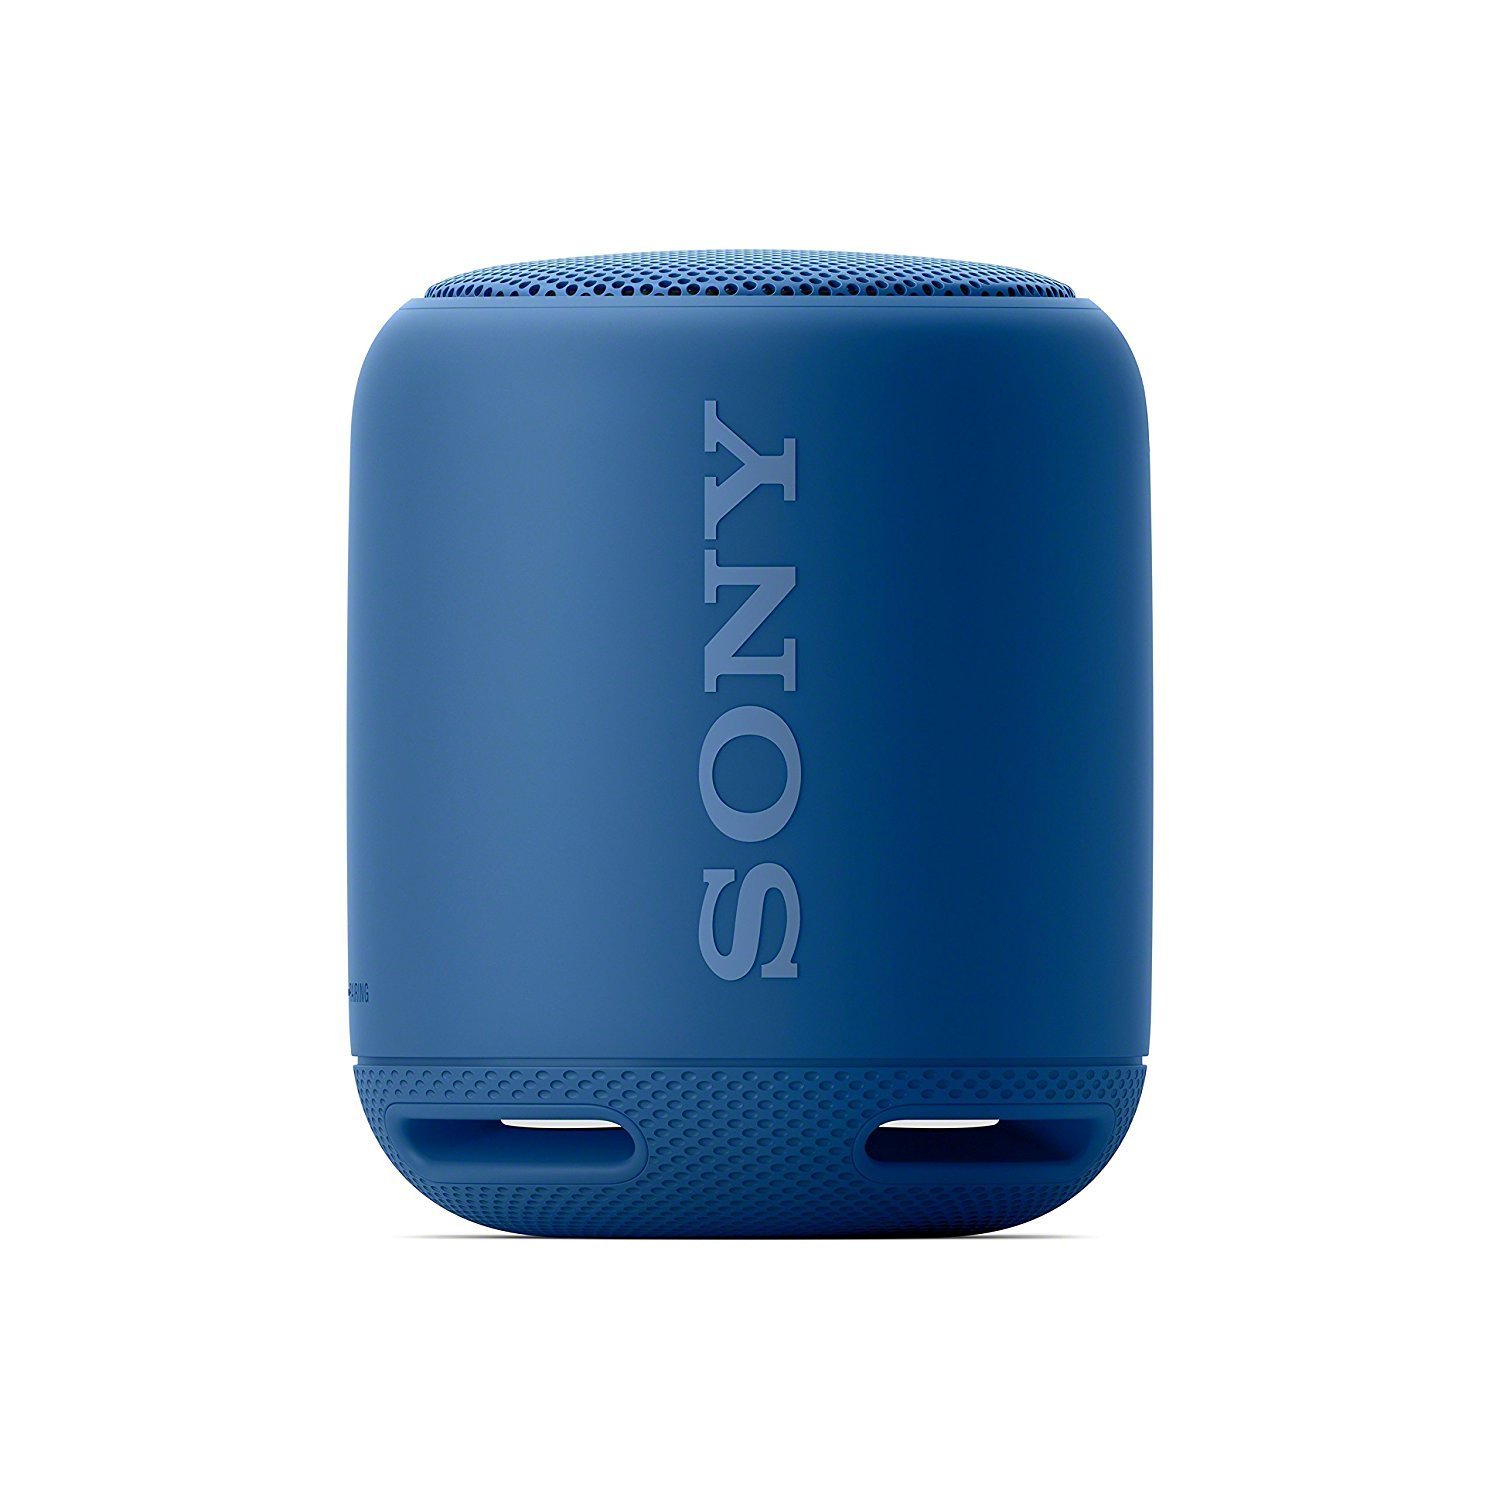 Sony XB10 Portable Wireless Speaker Waterproof with Bluetooth, BLUE